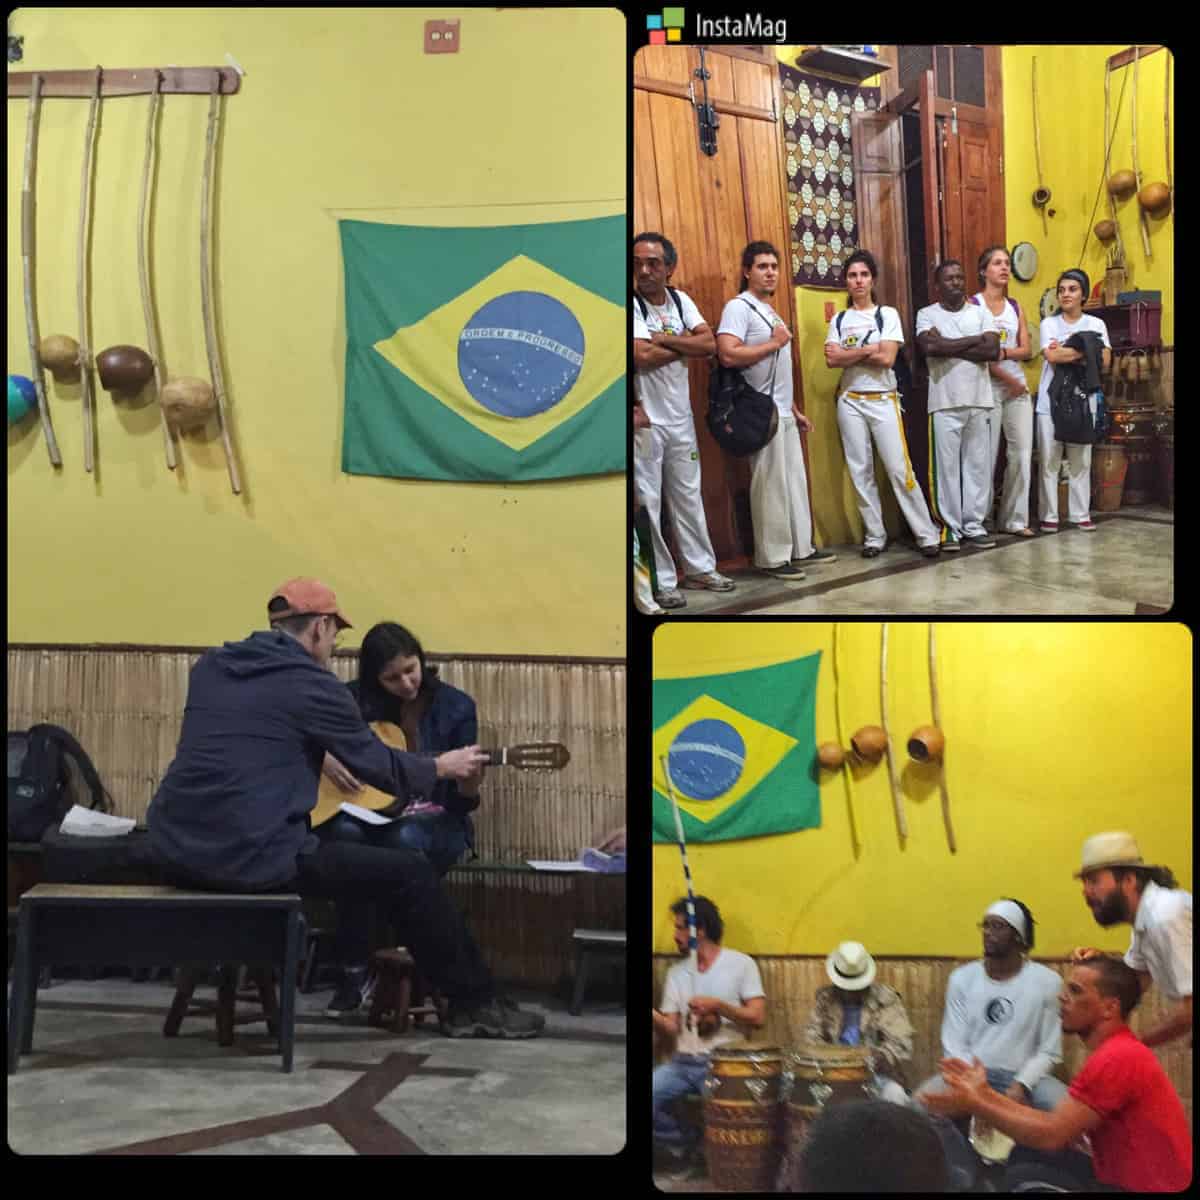 capoeira a brasilian martial art